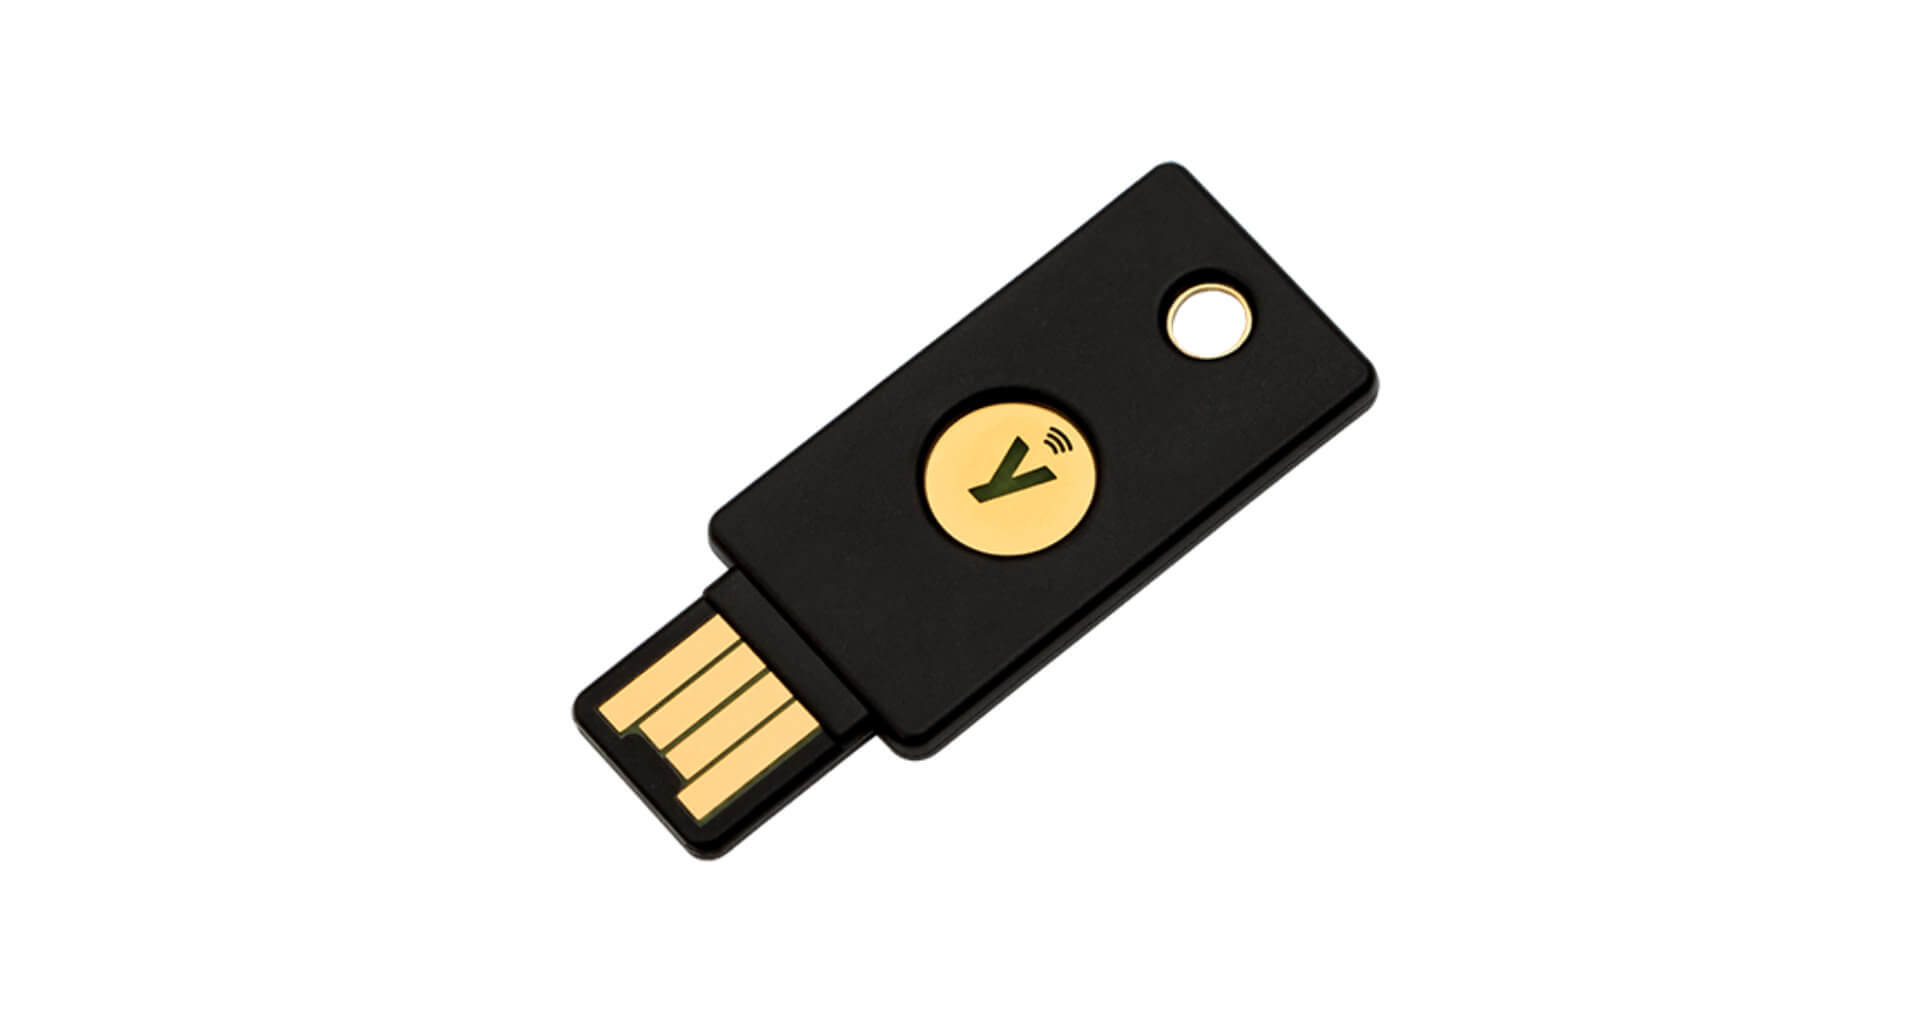 Asegura tus Cuentas y Datos en Línea con YubiKey 5: Tu Llave de Seguridad USB